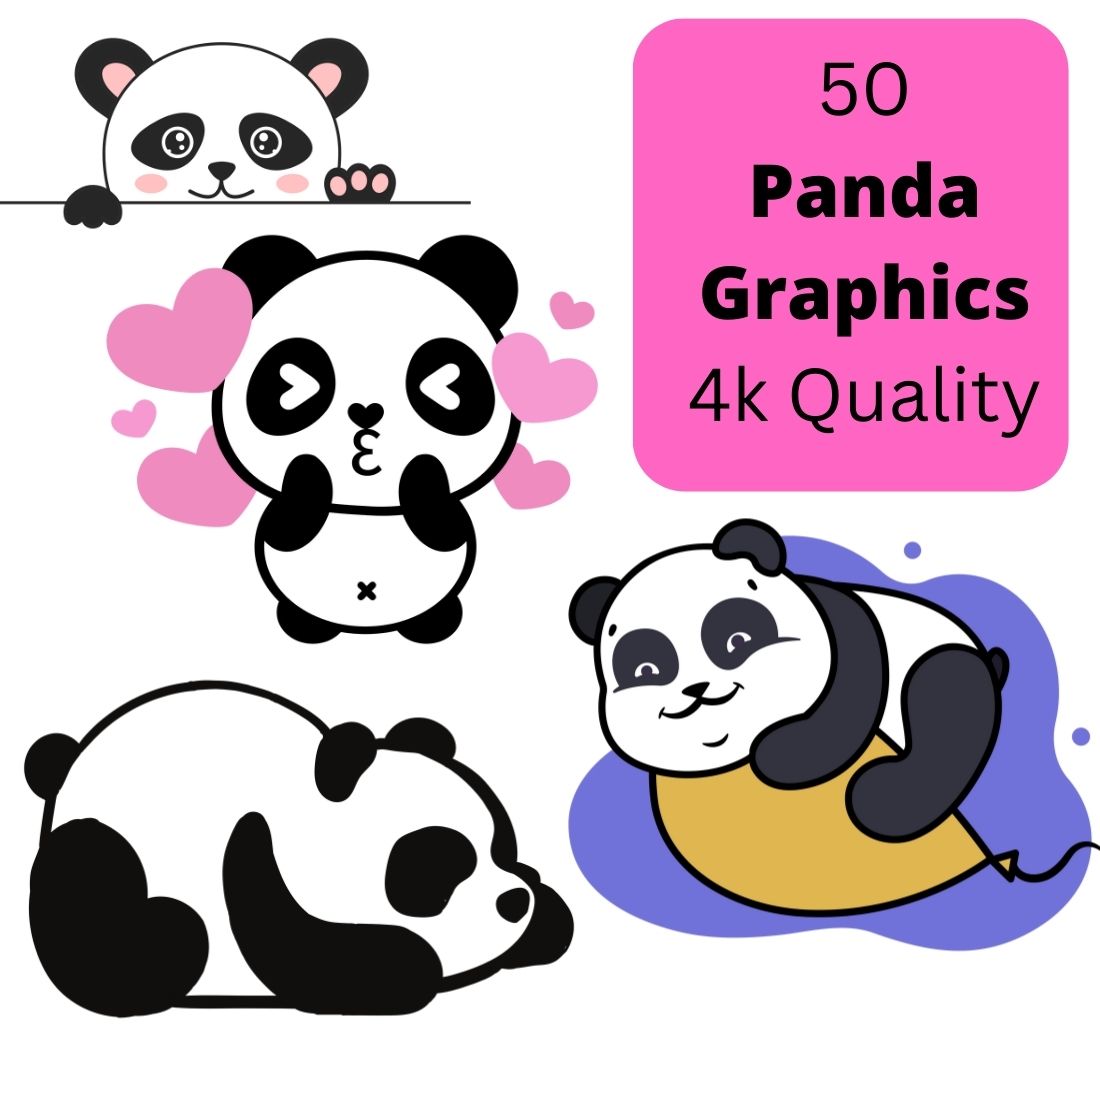 50 Pretty Panda Graphics main cover.